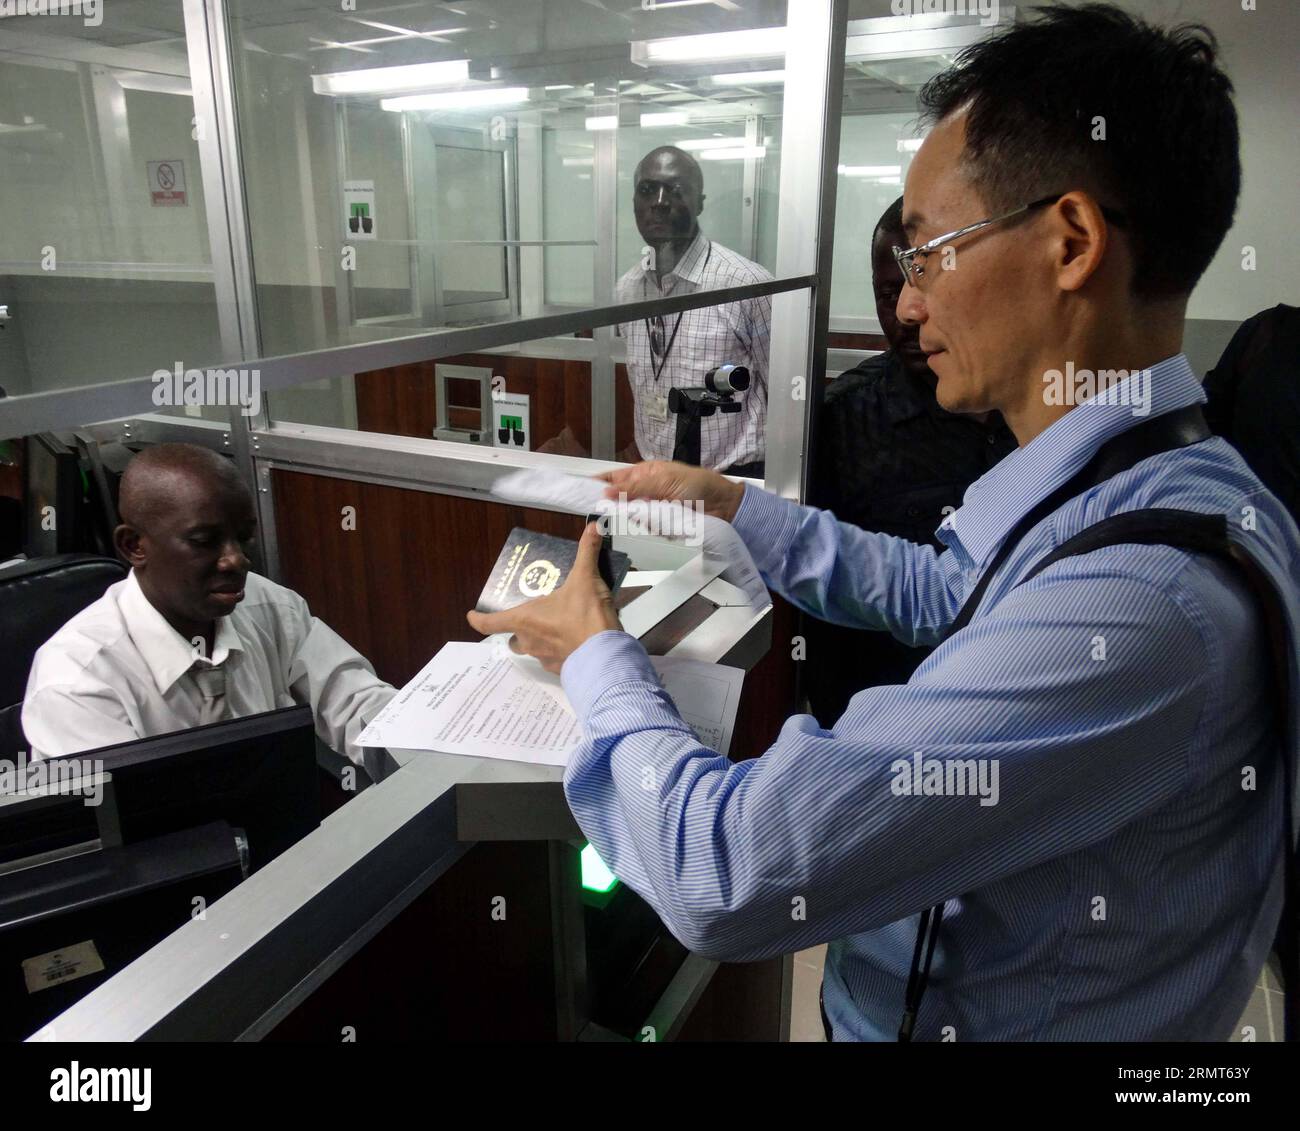 SHA Xinping (à droite), un expert médical chinois, subit les procédures à son arrivée à l'aéroport international de Lungi à Freetown, capitale de la Sierra Leone, le 17 août 2014. Trois experts médicaux de la province du Hunan du centre de la Chine sont arrivés dimanche en Sierra Leone, touchée par Ebola. La Chine a envoyé des équipes d'experts et des fournitures médicales en Guinée, au Libéria et en Sierra Leone pour aider à la prévention et au contrôle du virus Ebola. SIERRA LEONE-FREETOWN-EXPERT MÉDICAL CHINOIS-ARRIVÉE MengxChenguang PUBLICATIONxNOTxINxCHN Sha Xinping r un expert médical chinois passer par les procédures À son arrivée À Banque D'Images